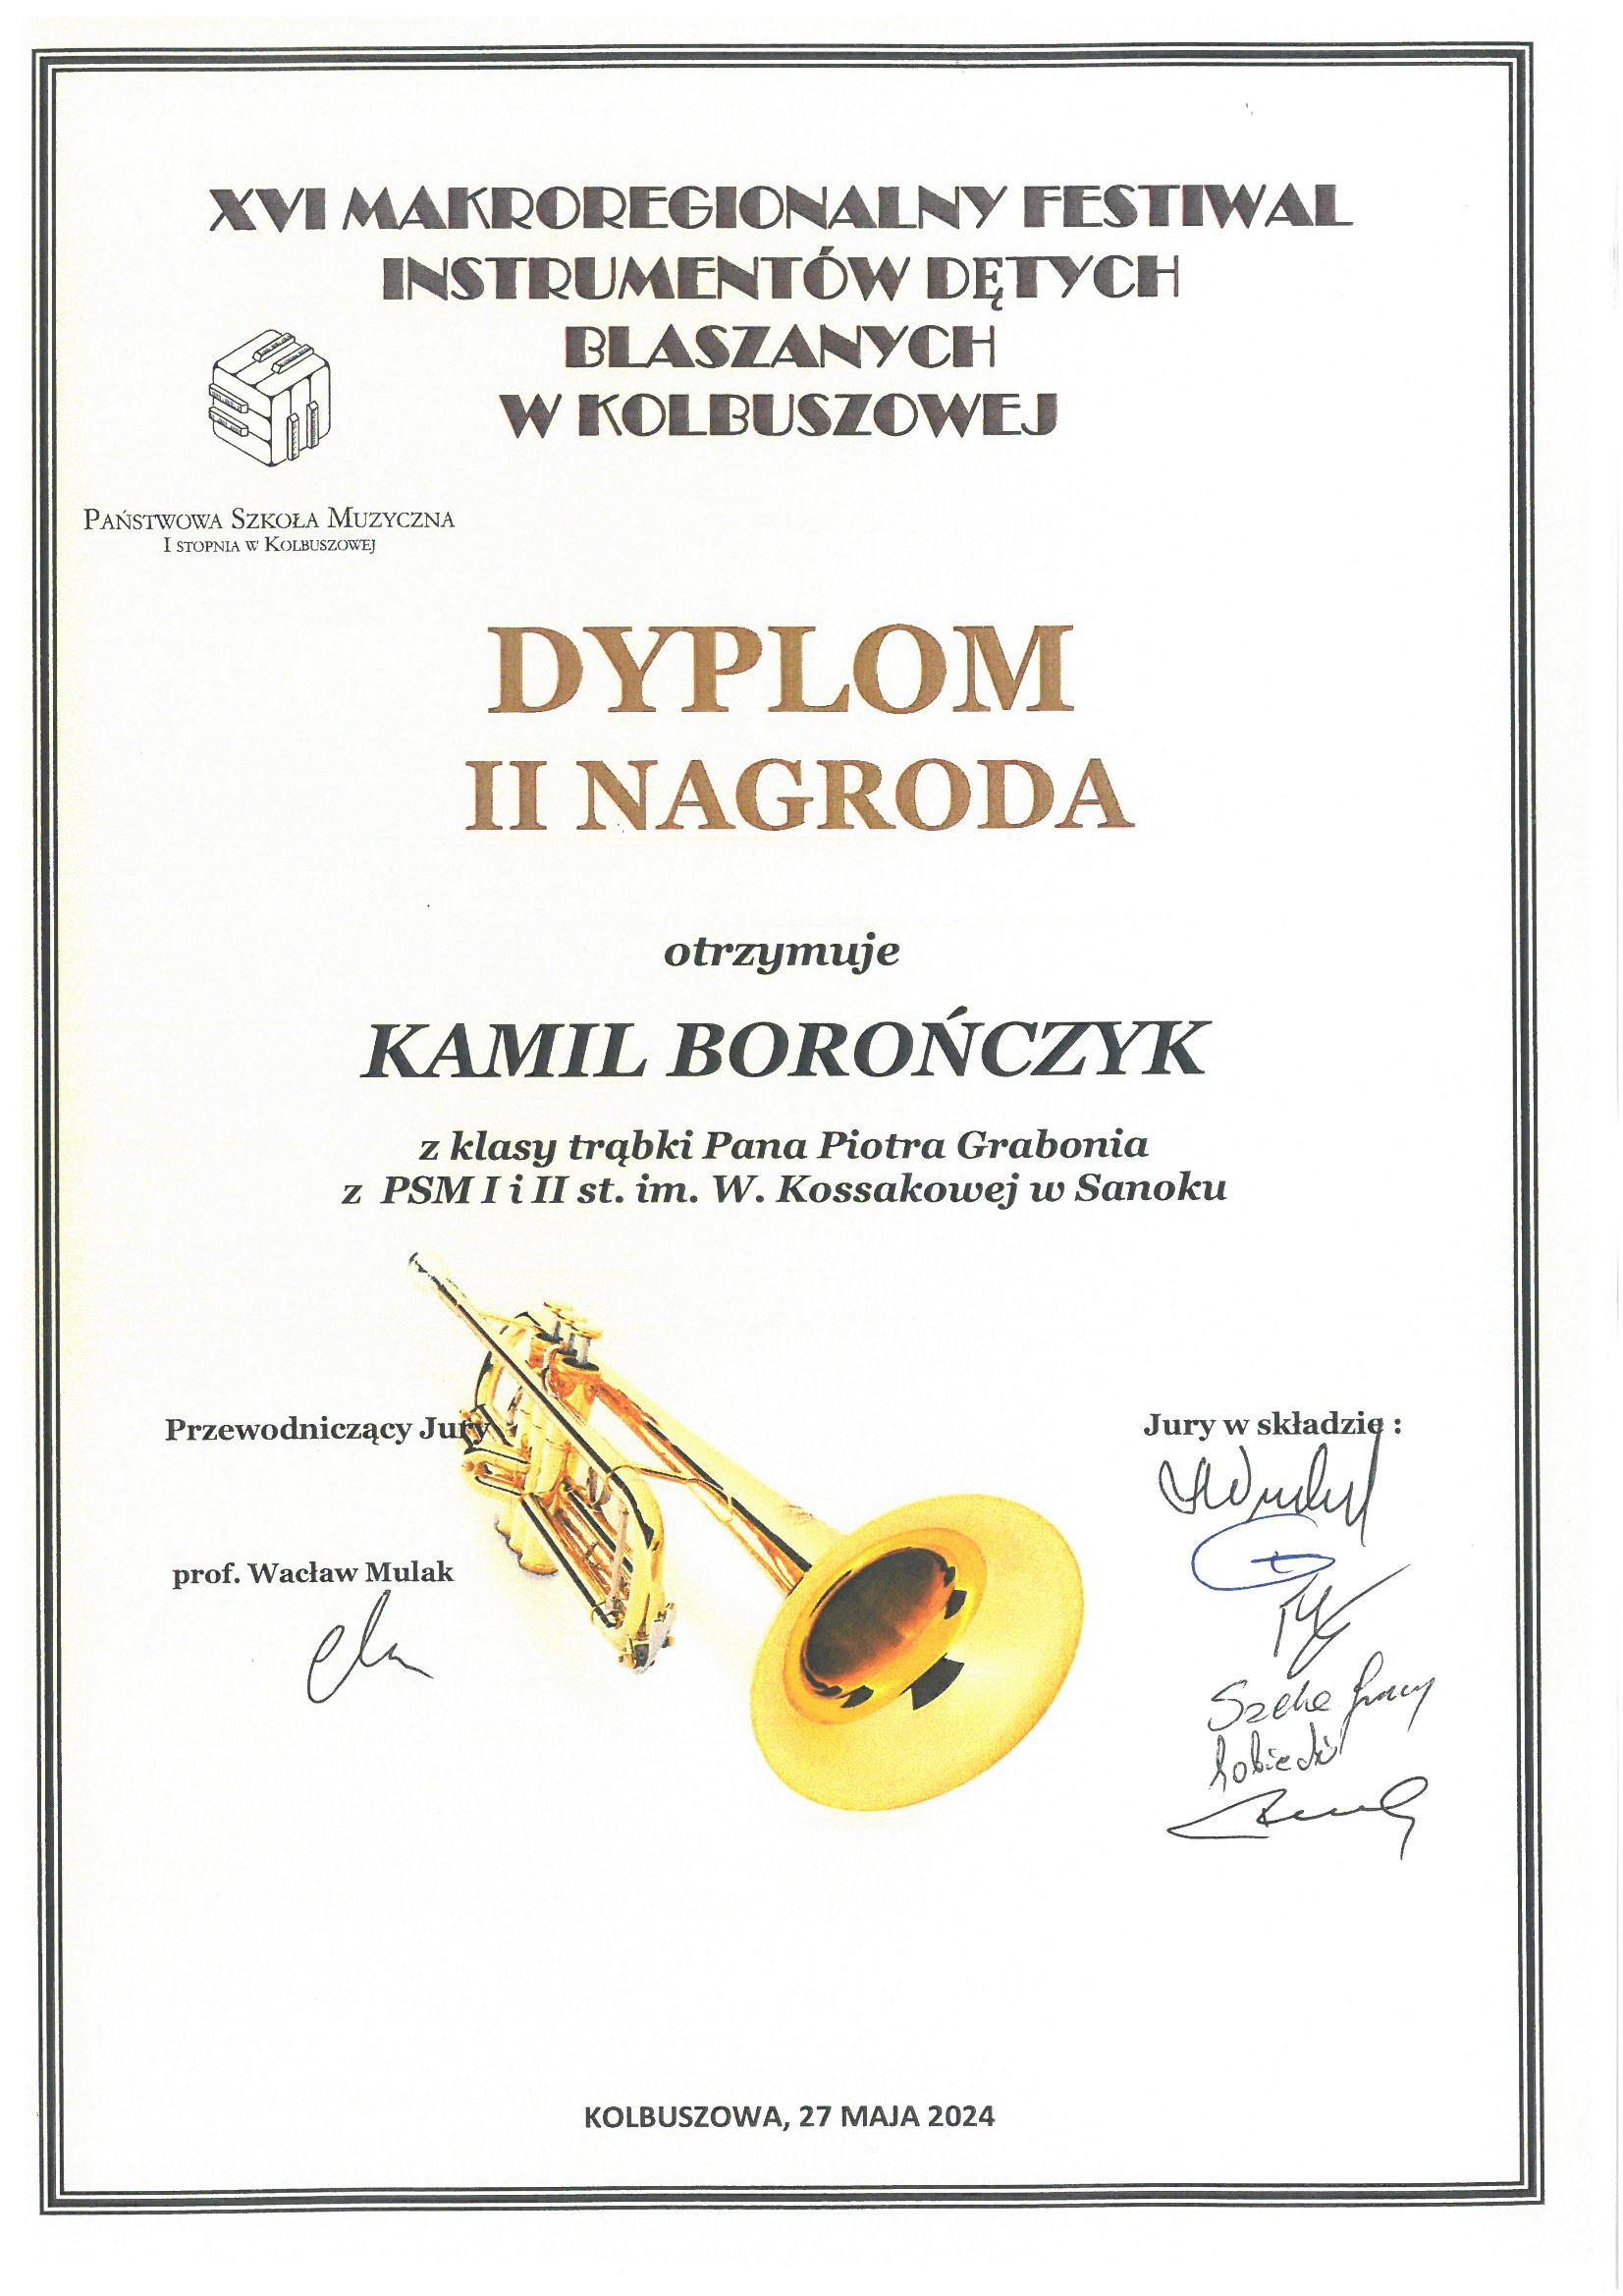 Dyplom - Makroregionalny Festiwal Instrumentów Dętych Blaszanych w Kolbuszowej - Kamil Borończyk - 2 nagroda. Białe tło, czarne litery, na środku zdjęcie trąbki.